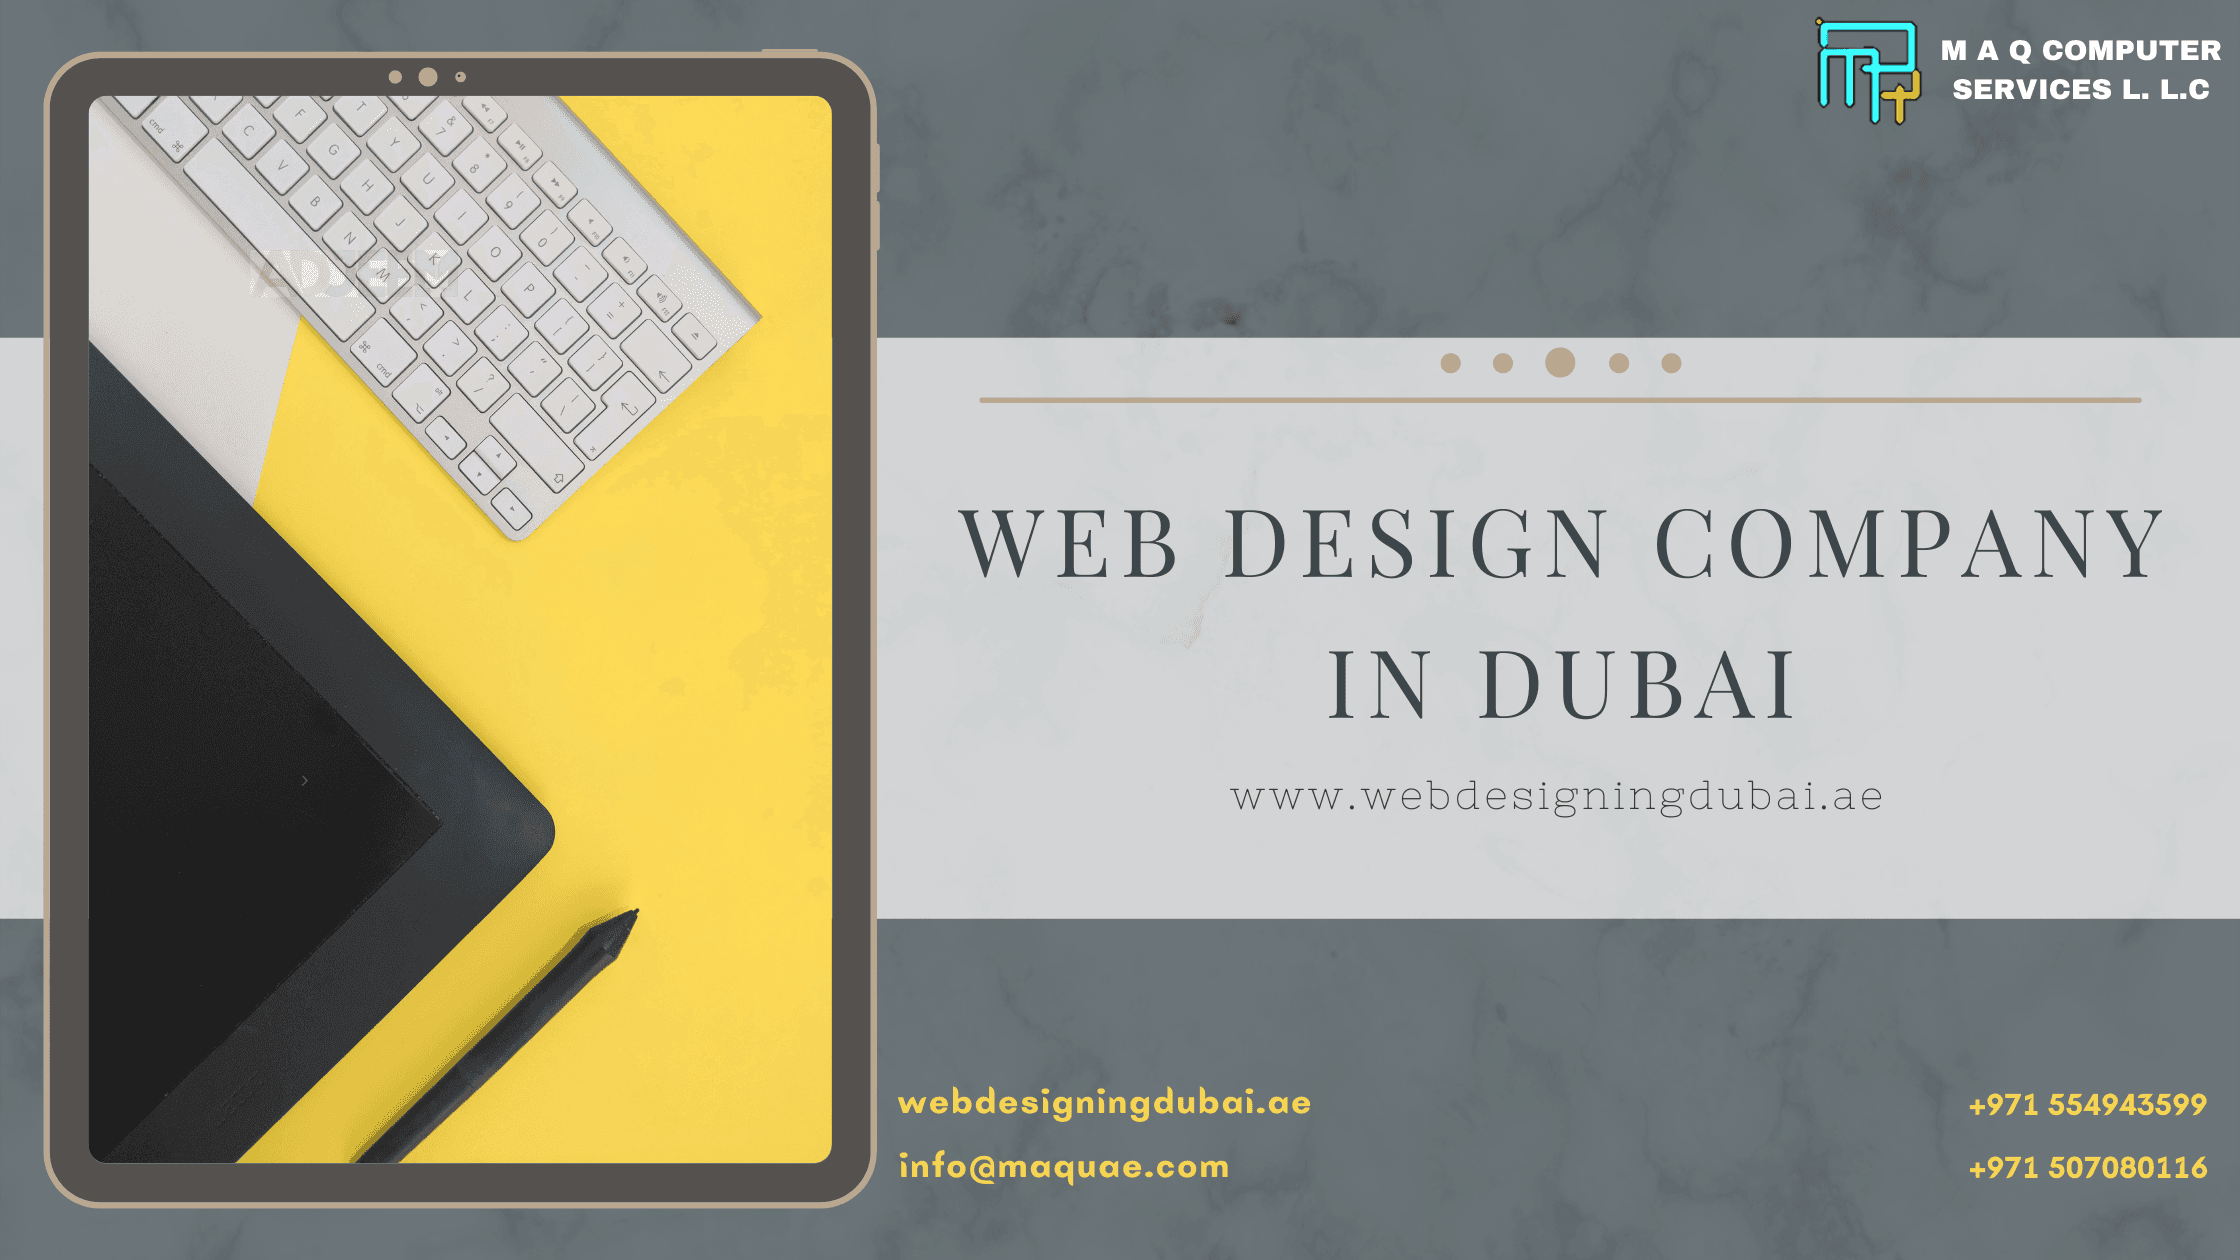 Web Design Company In Dubai